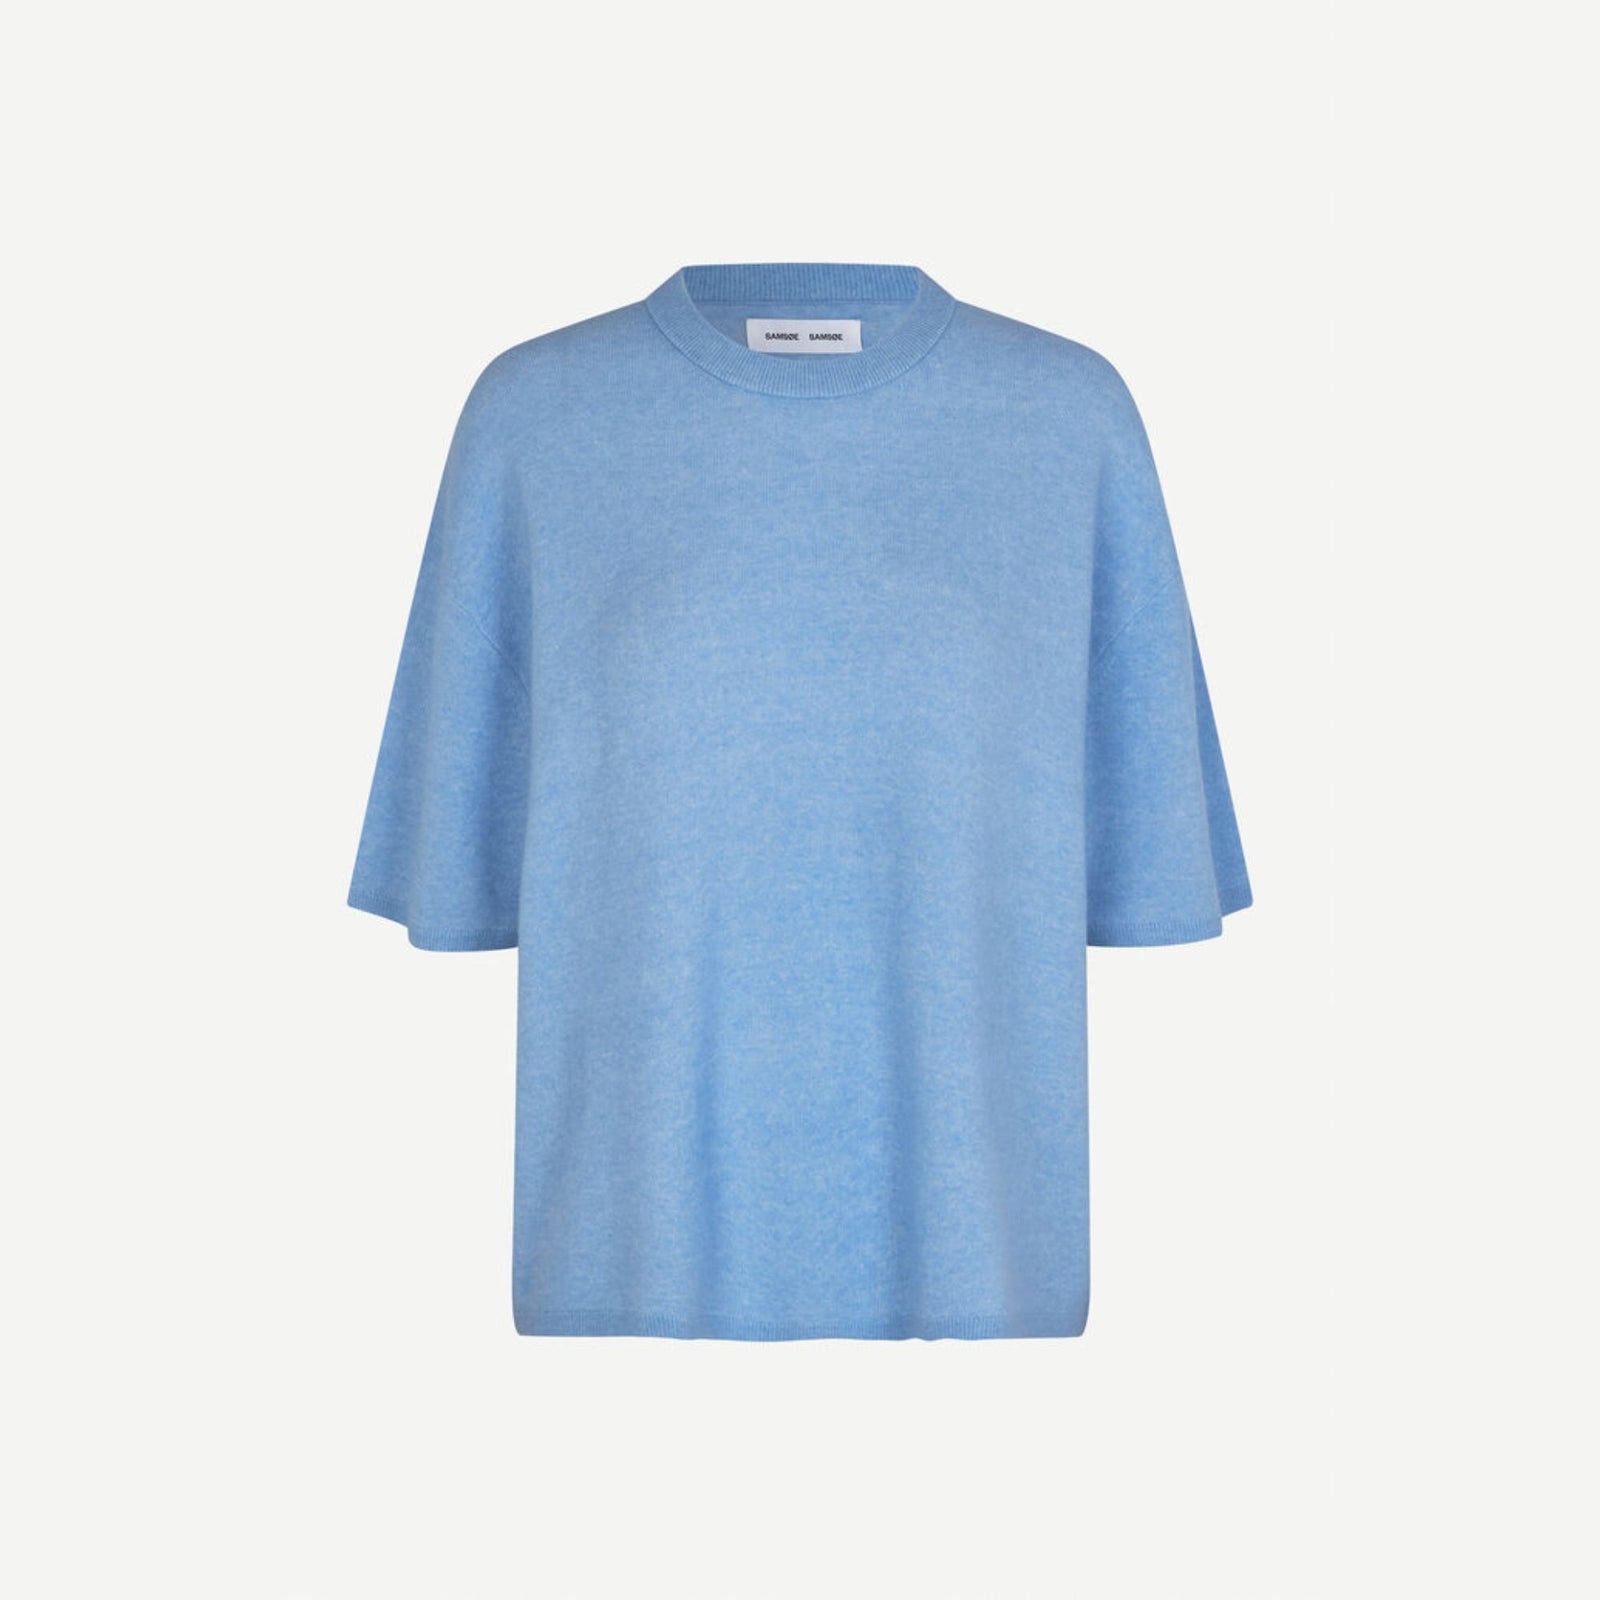 Samsøe Samsøe Megan T-Shirt 14709 Blue heron